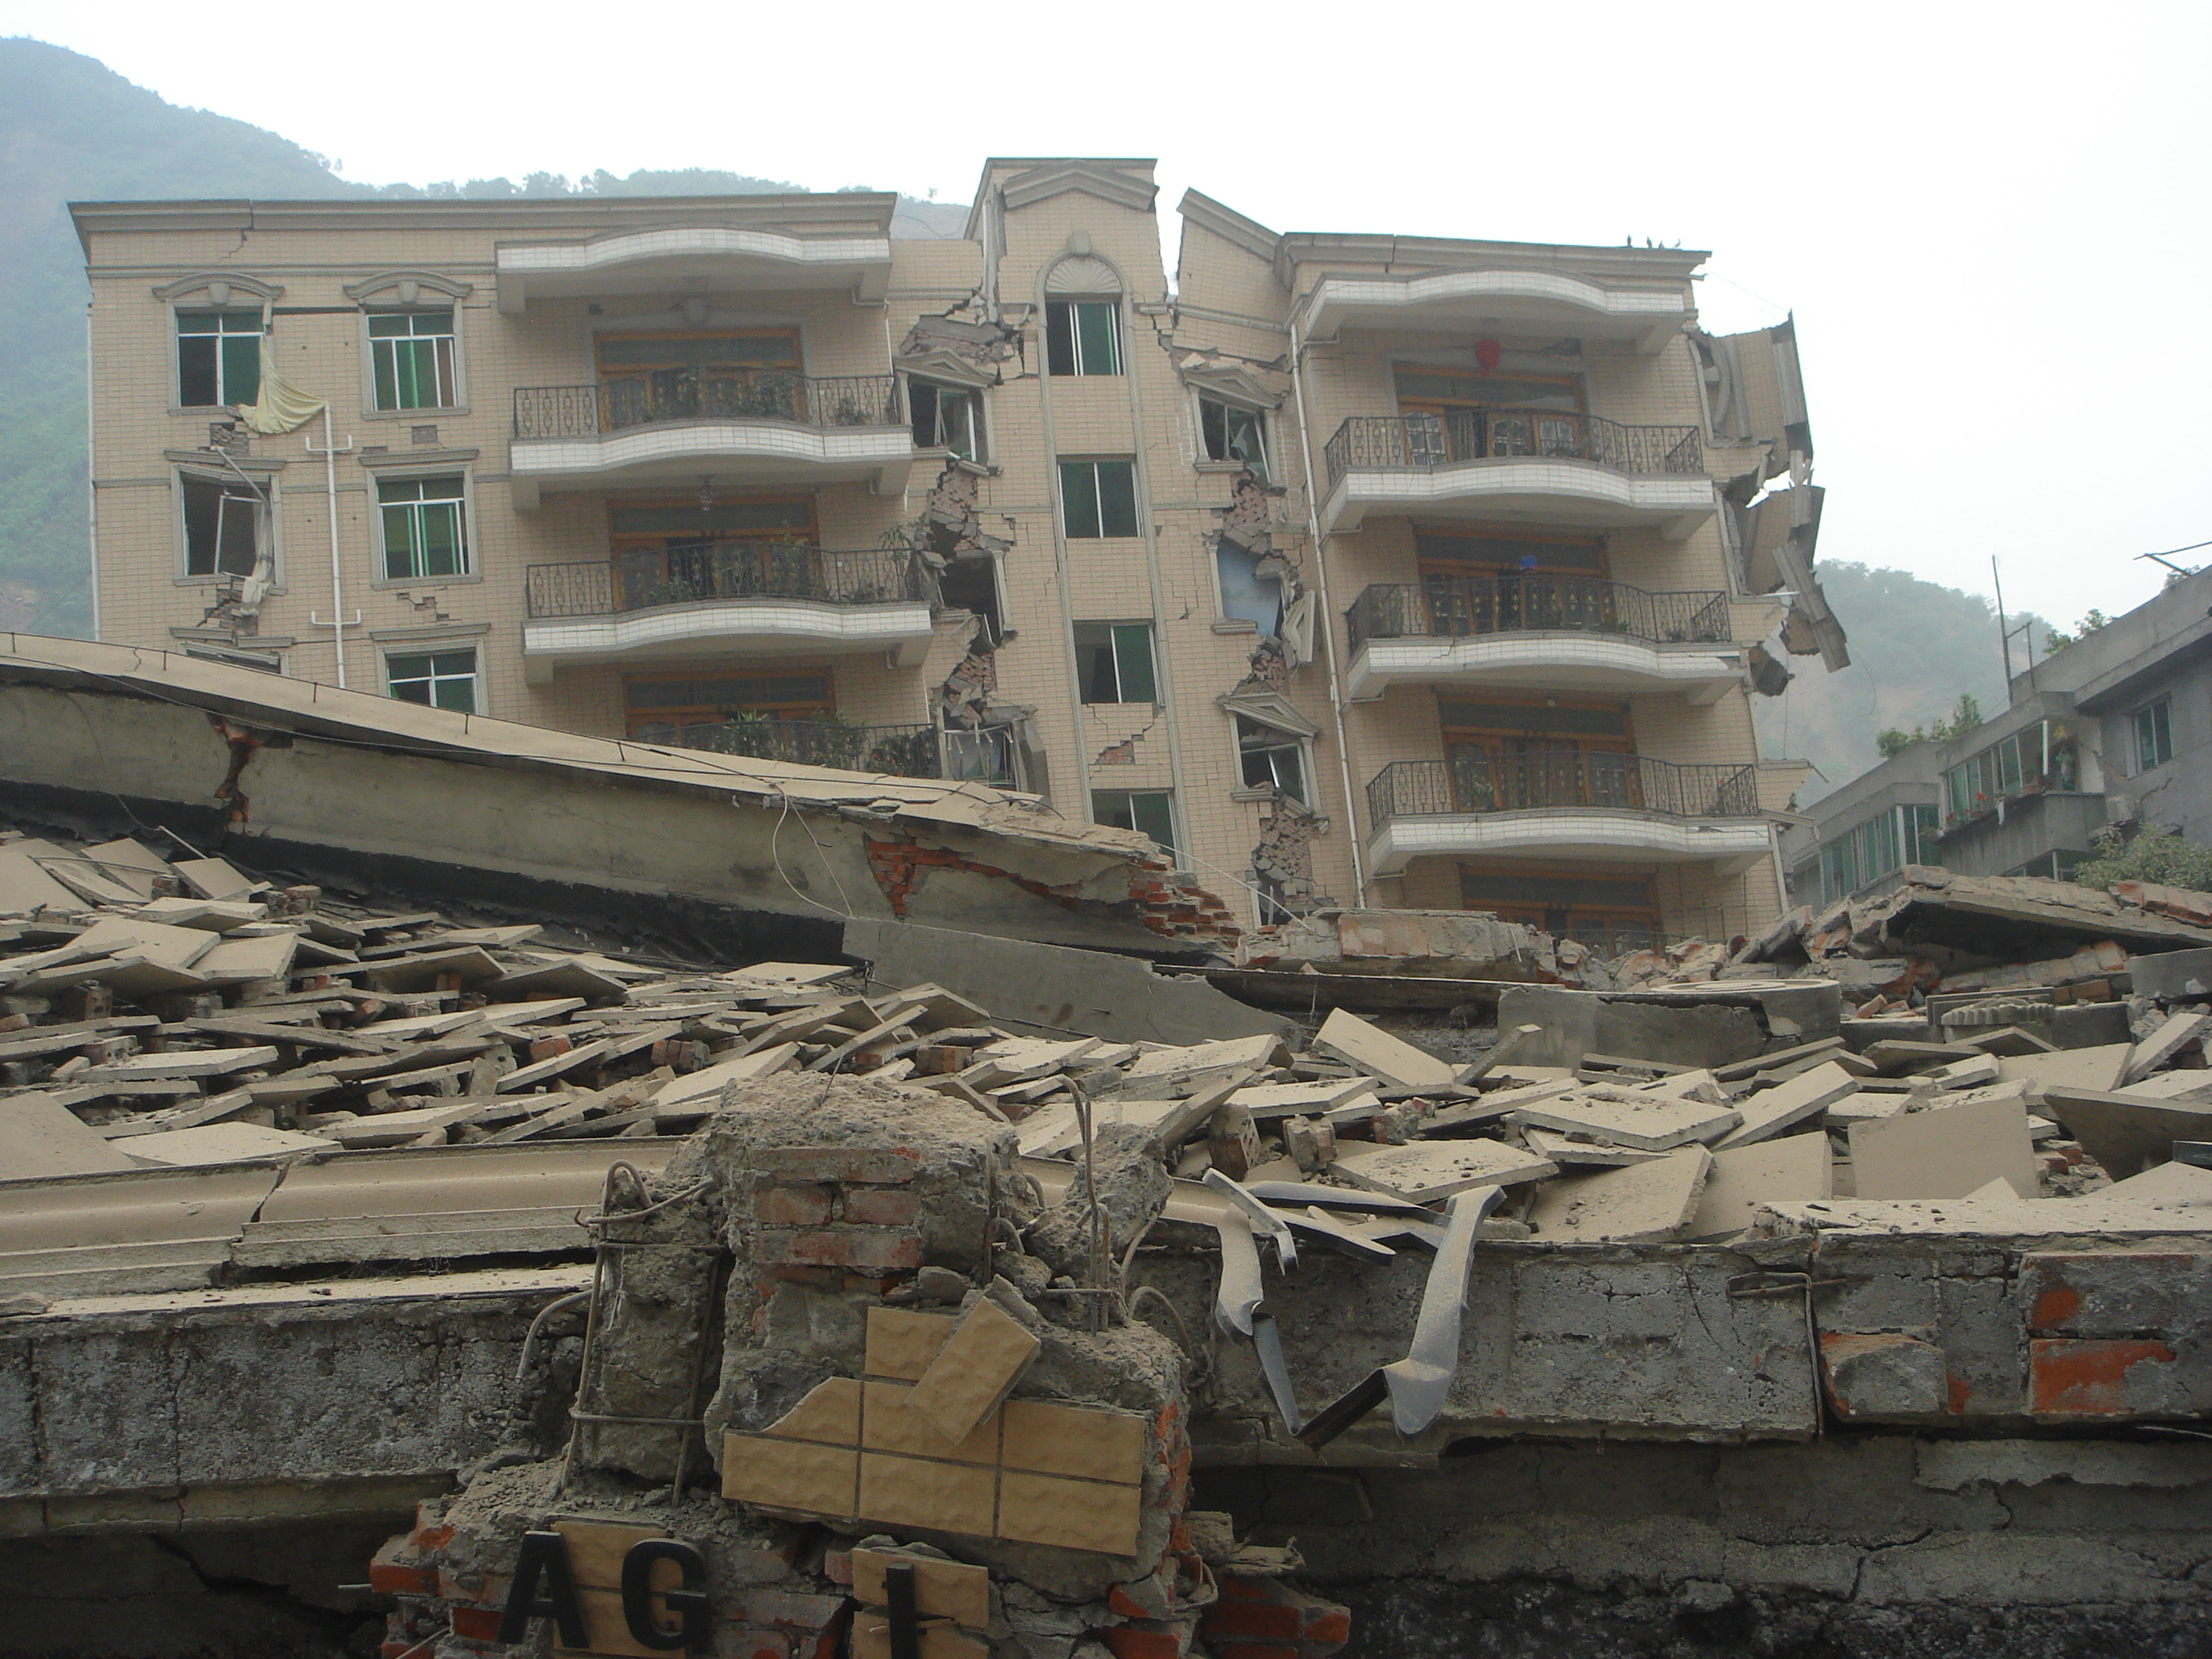 Estado de los edificios en Beichuan, China,  después del terremoto de 2008 provocado tras la fabricación de una presa. Foto: 人神之间